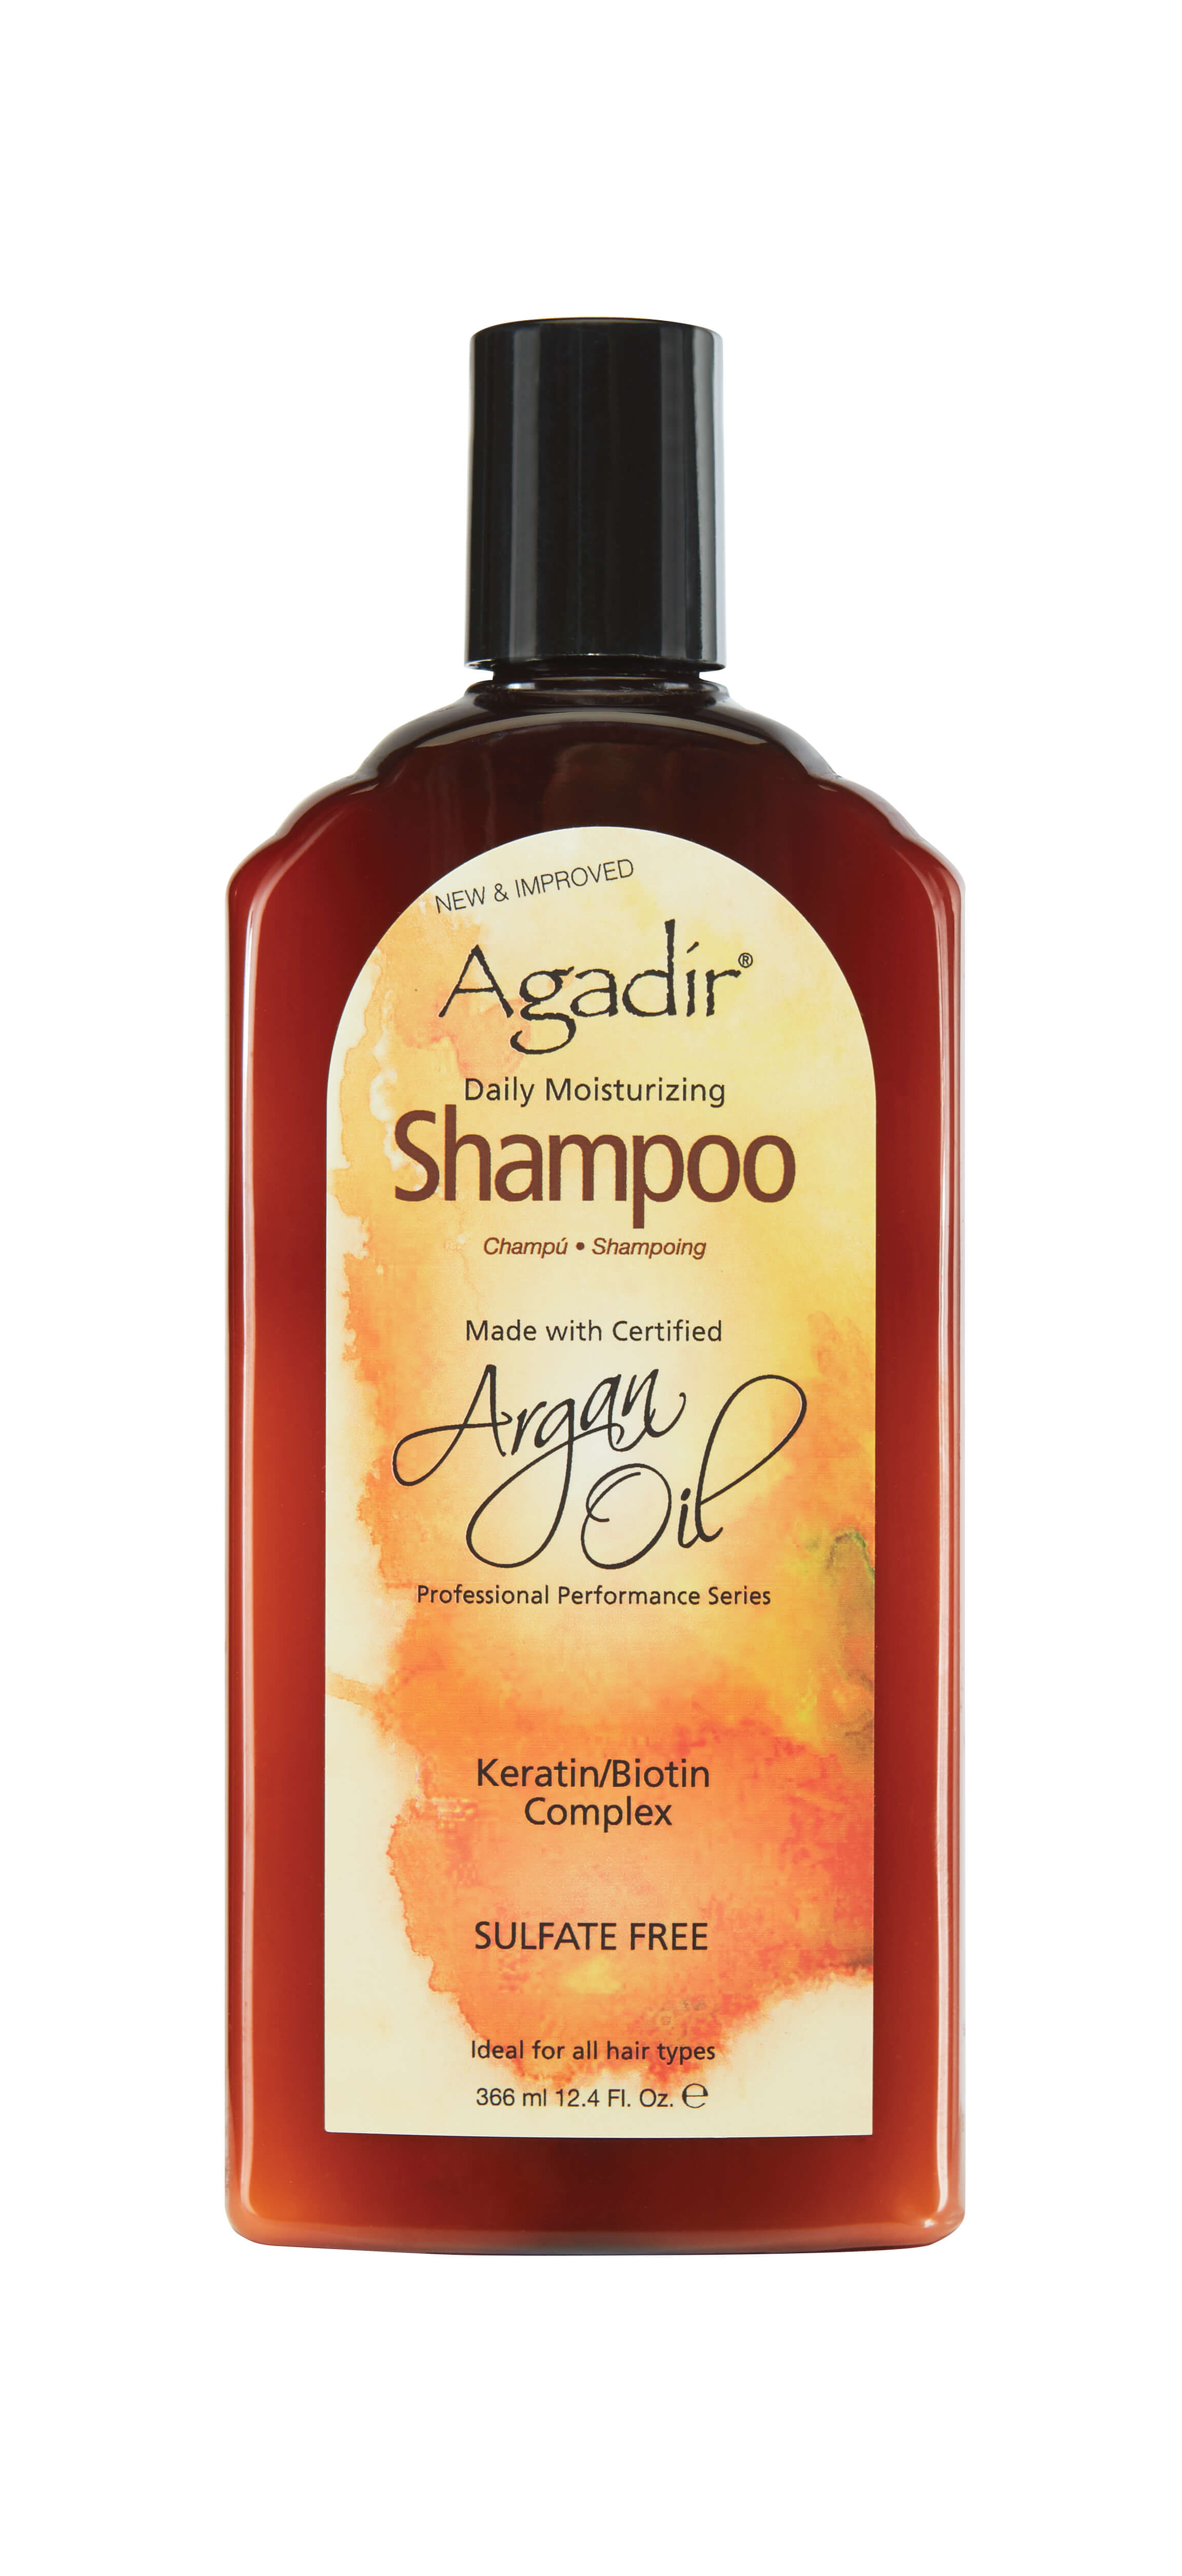 Увлажняющий шампунь Agadir Argan Oil Daily Moisturizing Shampoo 366 ml